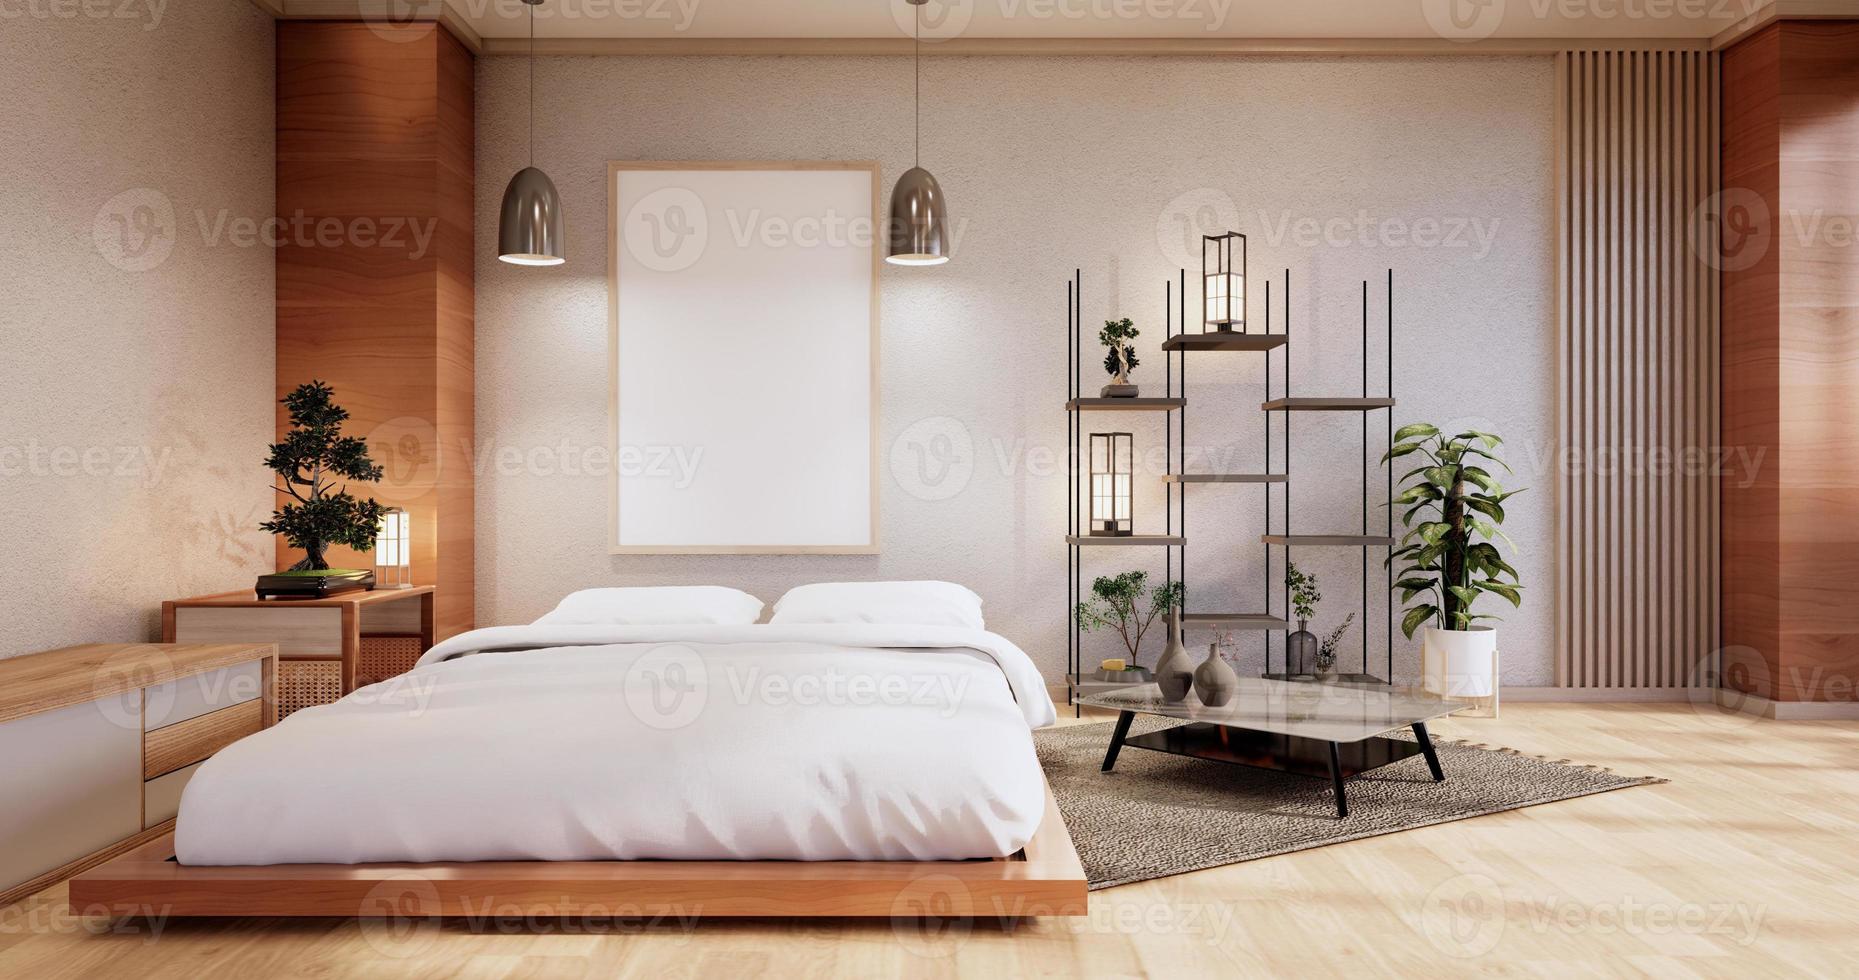 maquette intérieure avec plante de lit zen et décoration dans une chambre japonaise. rendu 3D. photo